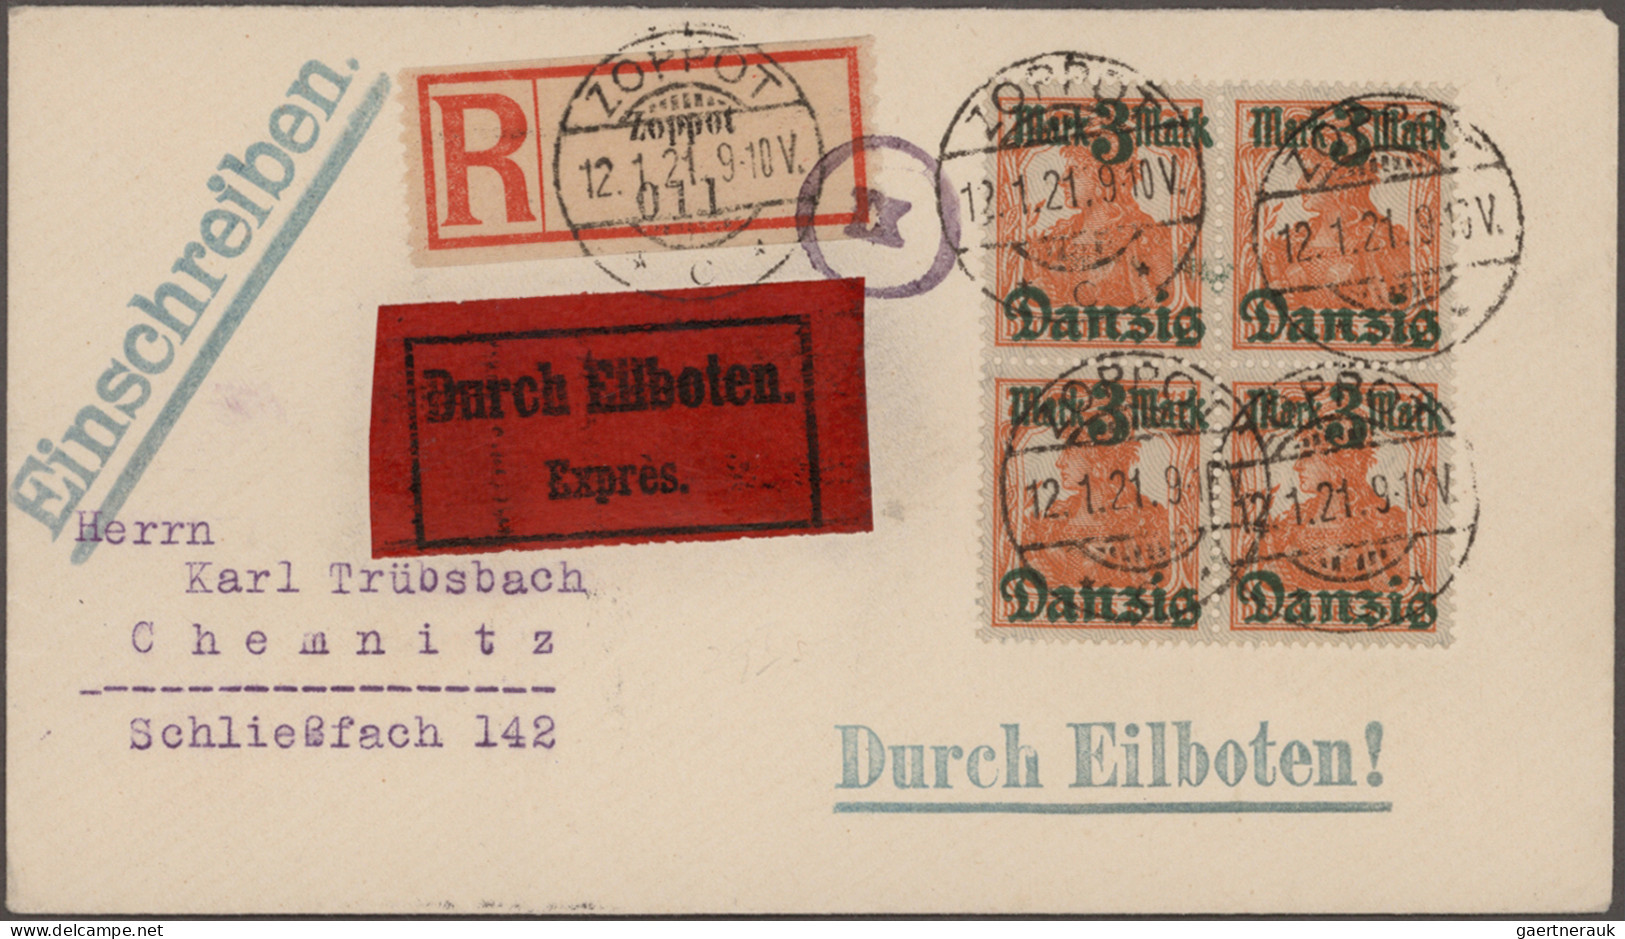 Danzig: 1874/1942, Partie von ca. 76 Briefen und Karten aus dem Einzellos-Bereic